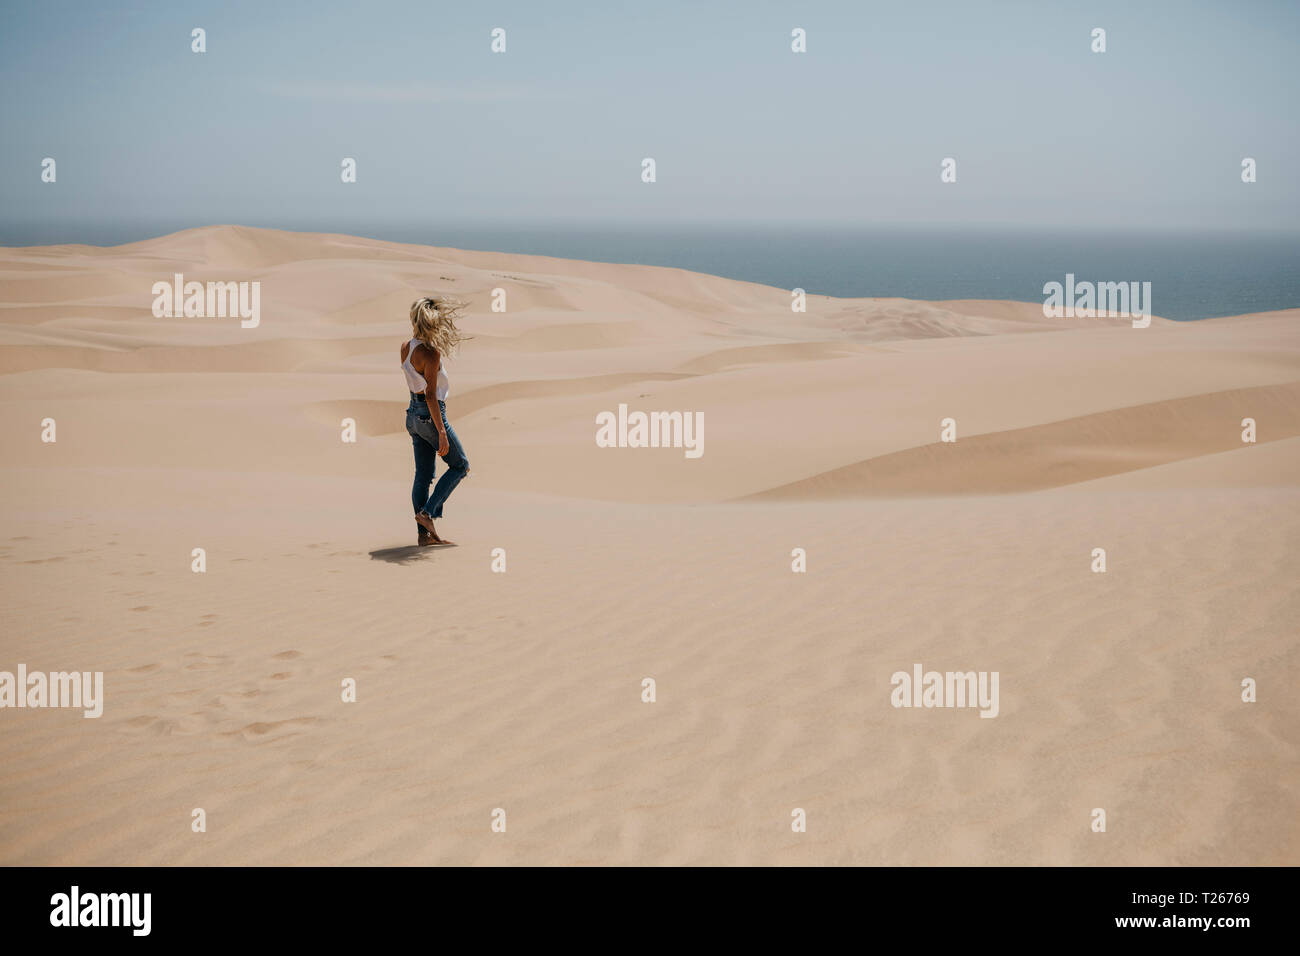 La Namibie, Walvis Bay, Namib-Naukluft National Park, Sandwich Harbour, femme marche dans le paysage de dunes Banque D'Images